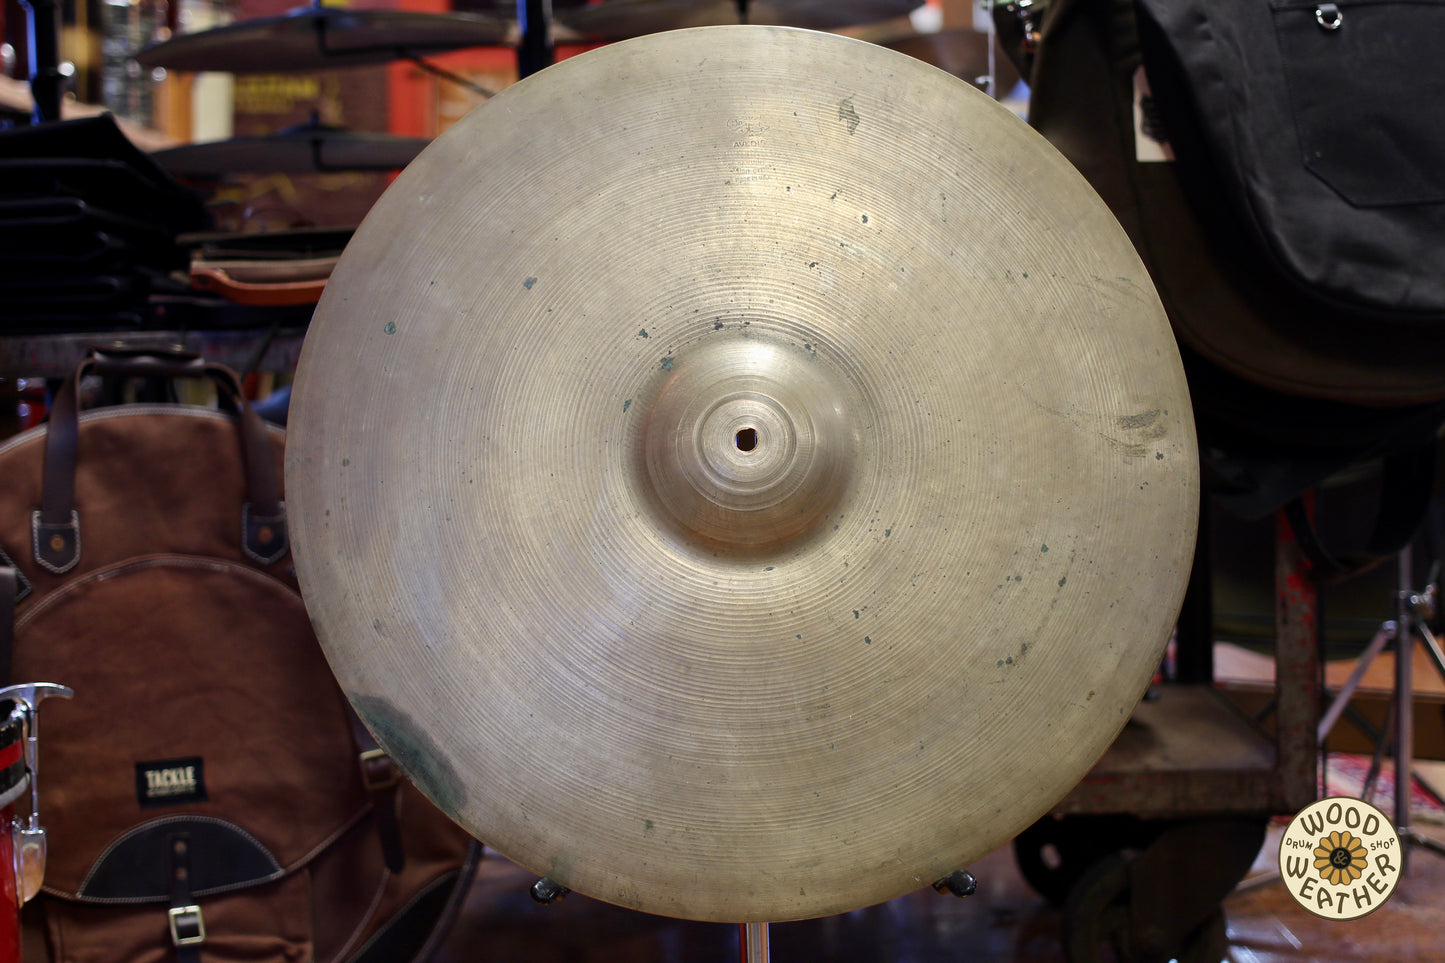 1950s A. Zildjian 20" Ride Cymbal 2878g